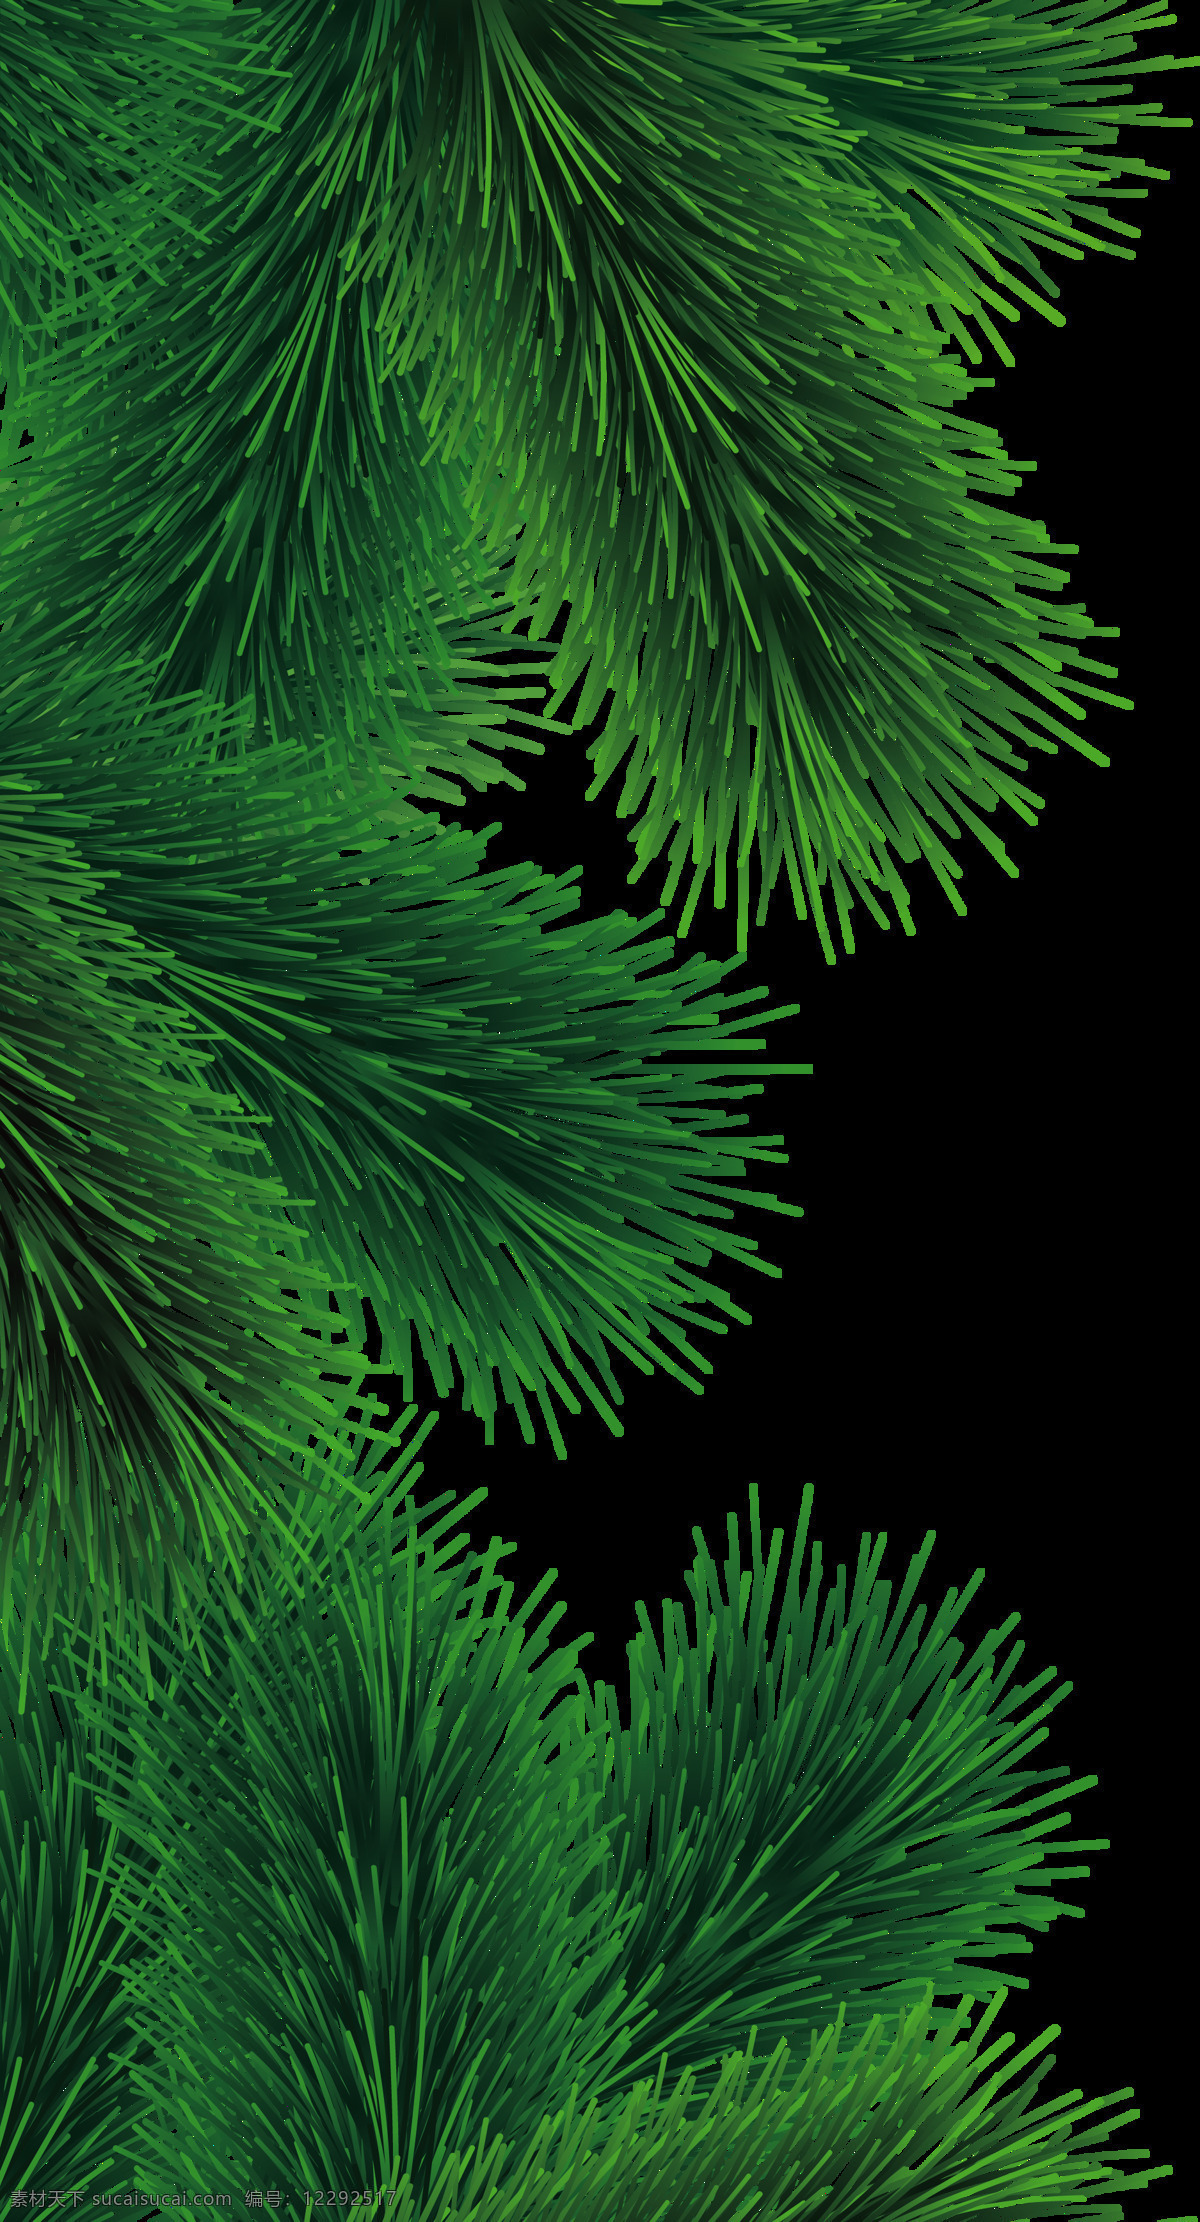 绿色 枞树 免 抠 透明 图 层 圣诞树 圣诞树装饰 矢量圣诞树 可爱圣诞树 商场圣诞树 白色圣诞树 松树 枞树素材 枞树装饰图 圣诞元素 绿色圣诞树 节日装饰元素